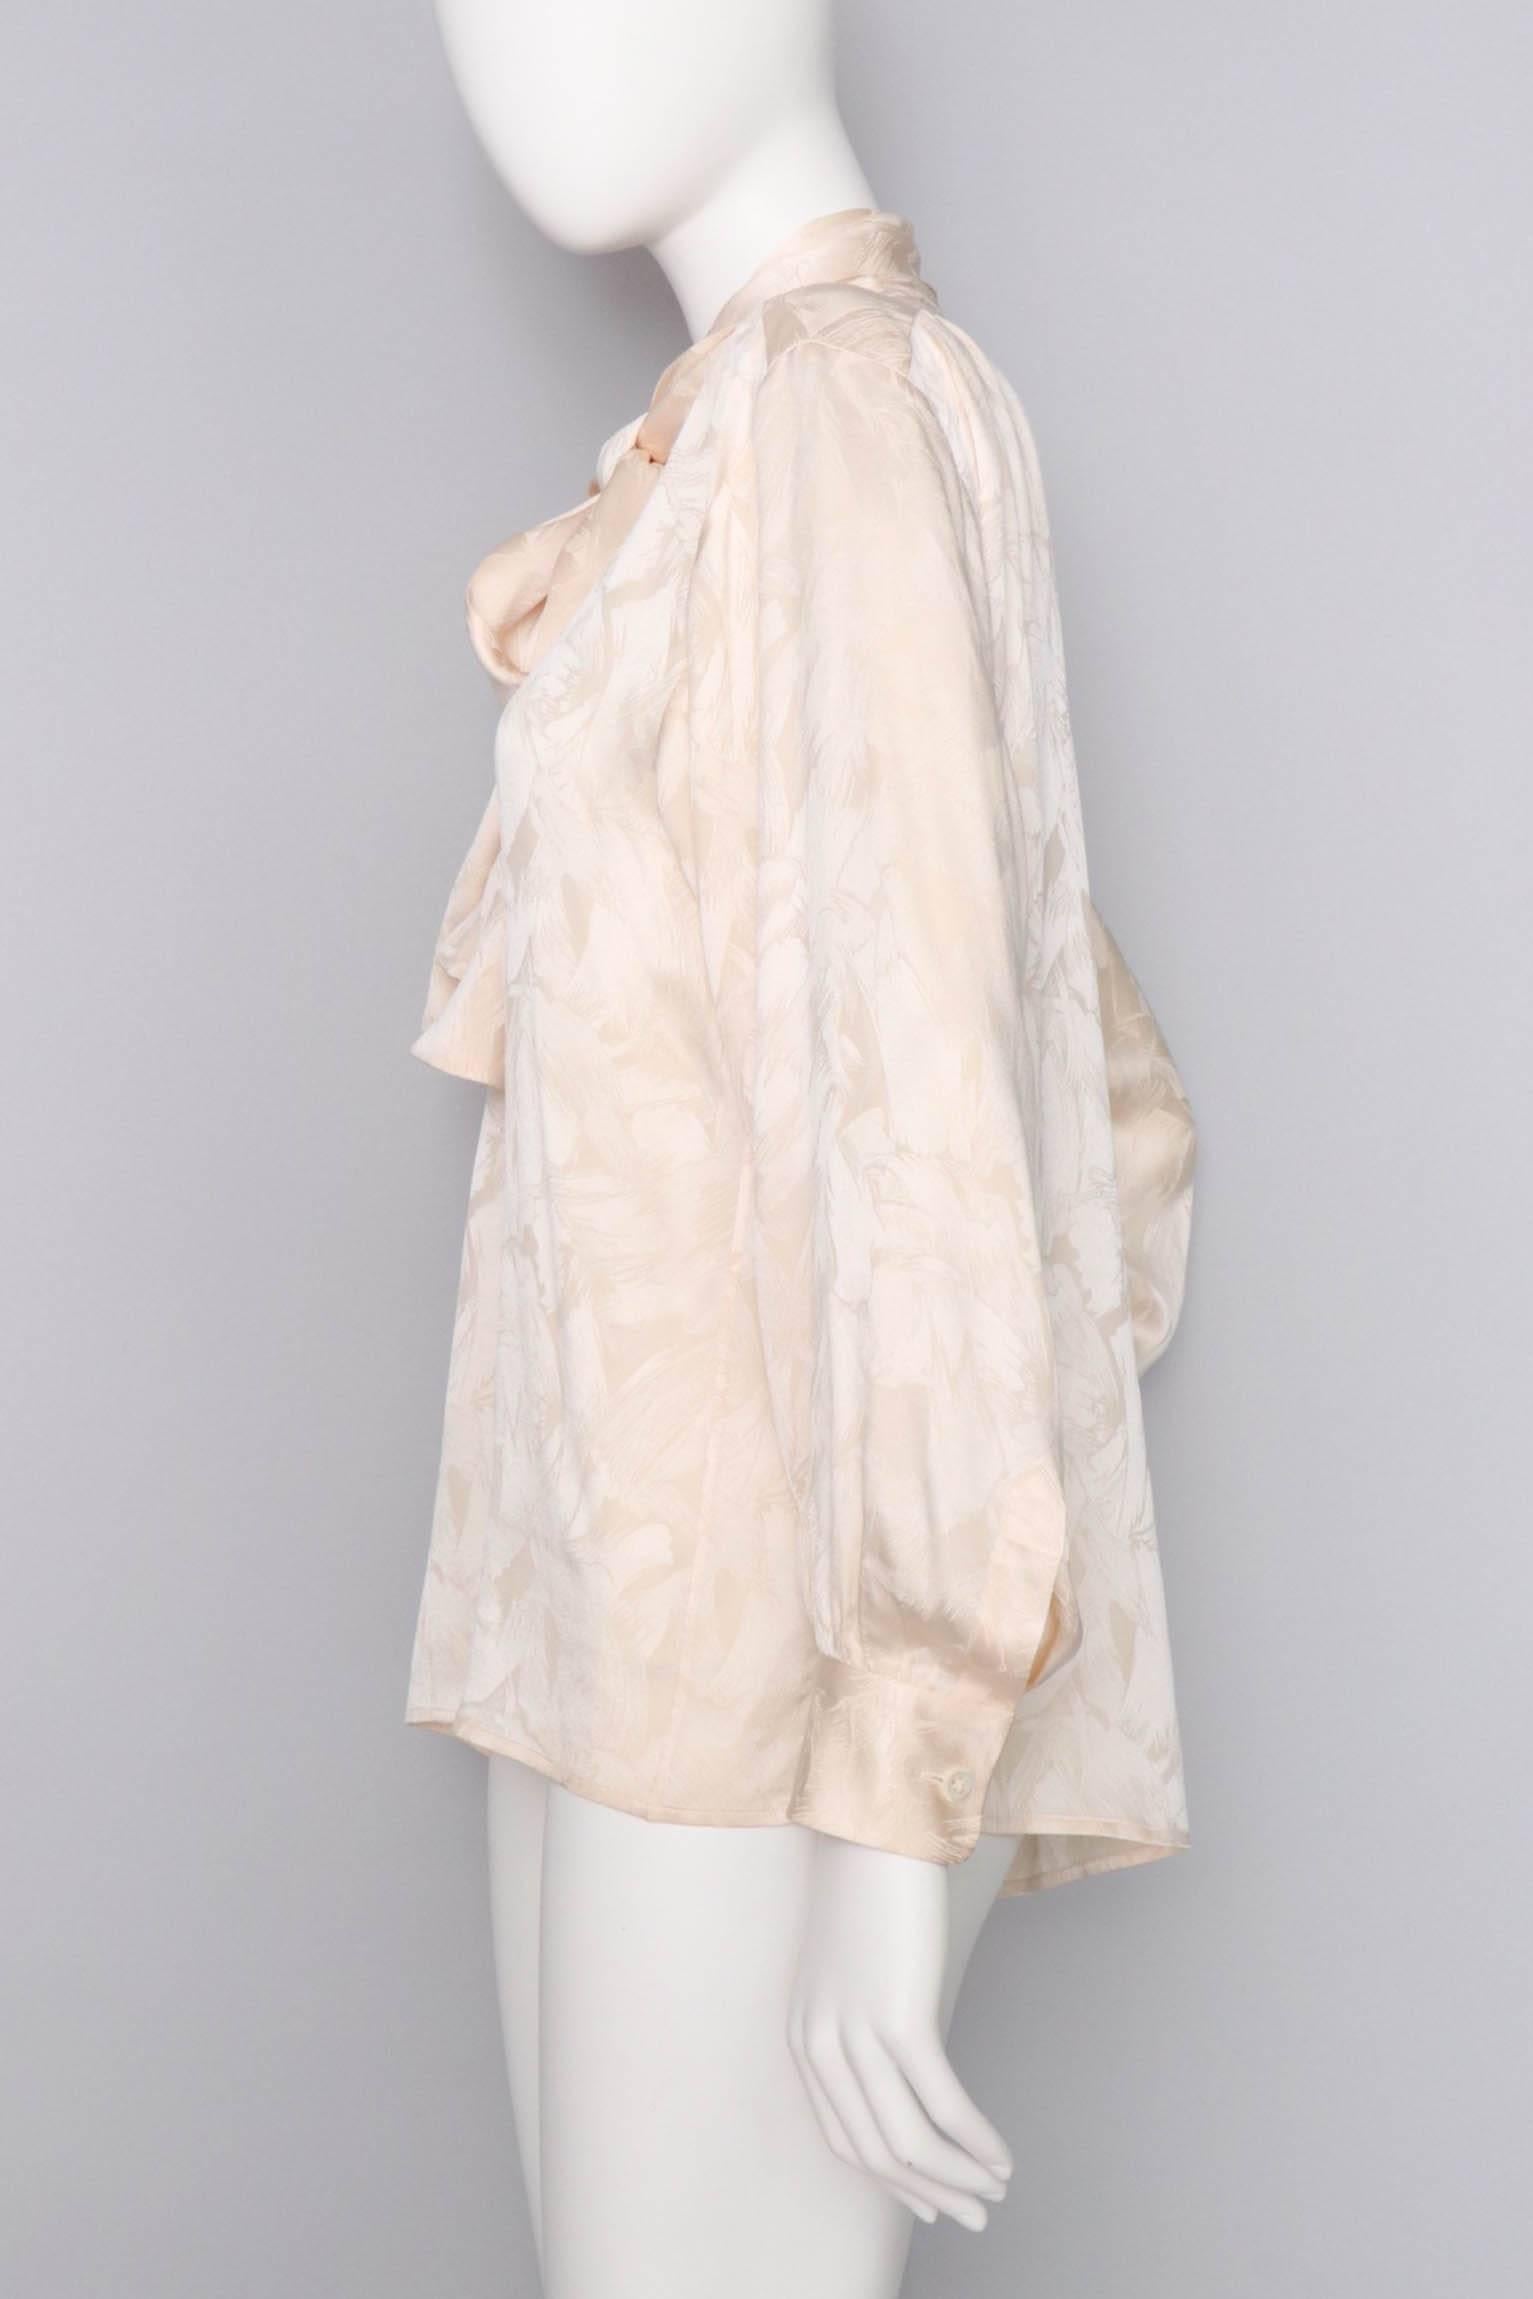 Beige Yves Saint Laurent Rive Gauche Vintage Jacquard Woven Silk Blouse, 1980s 